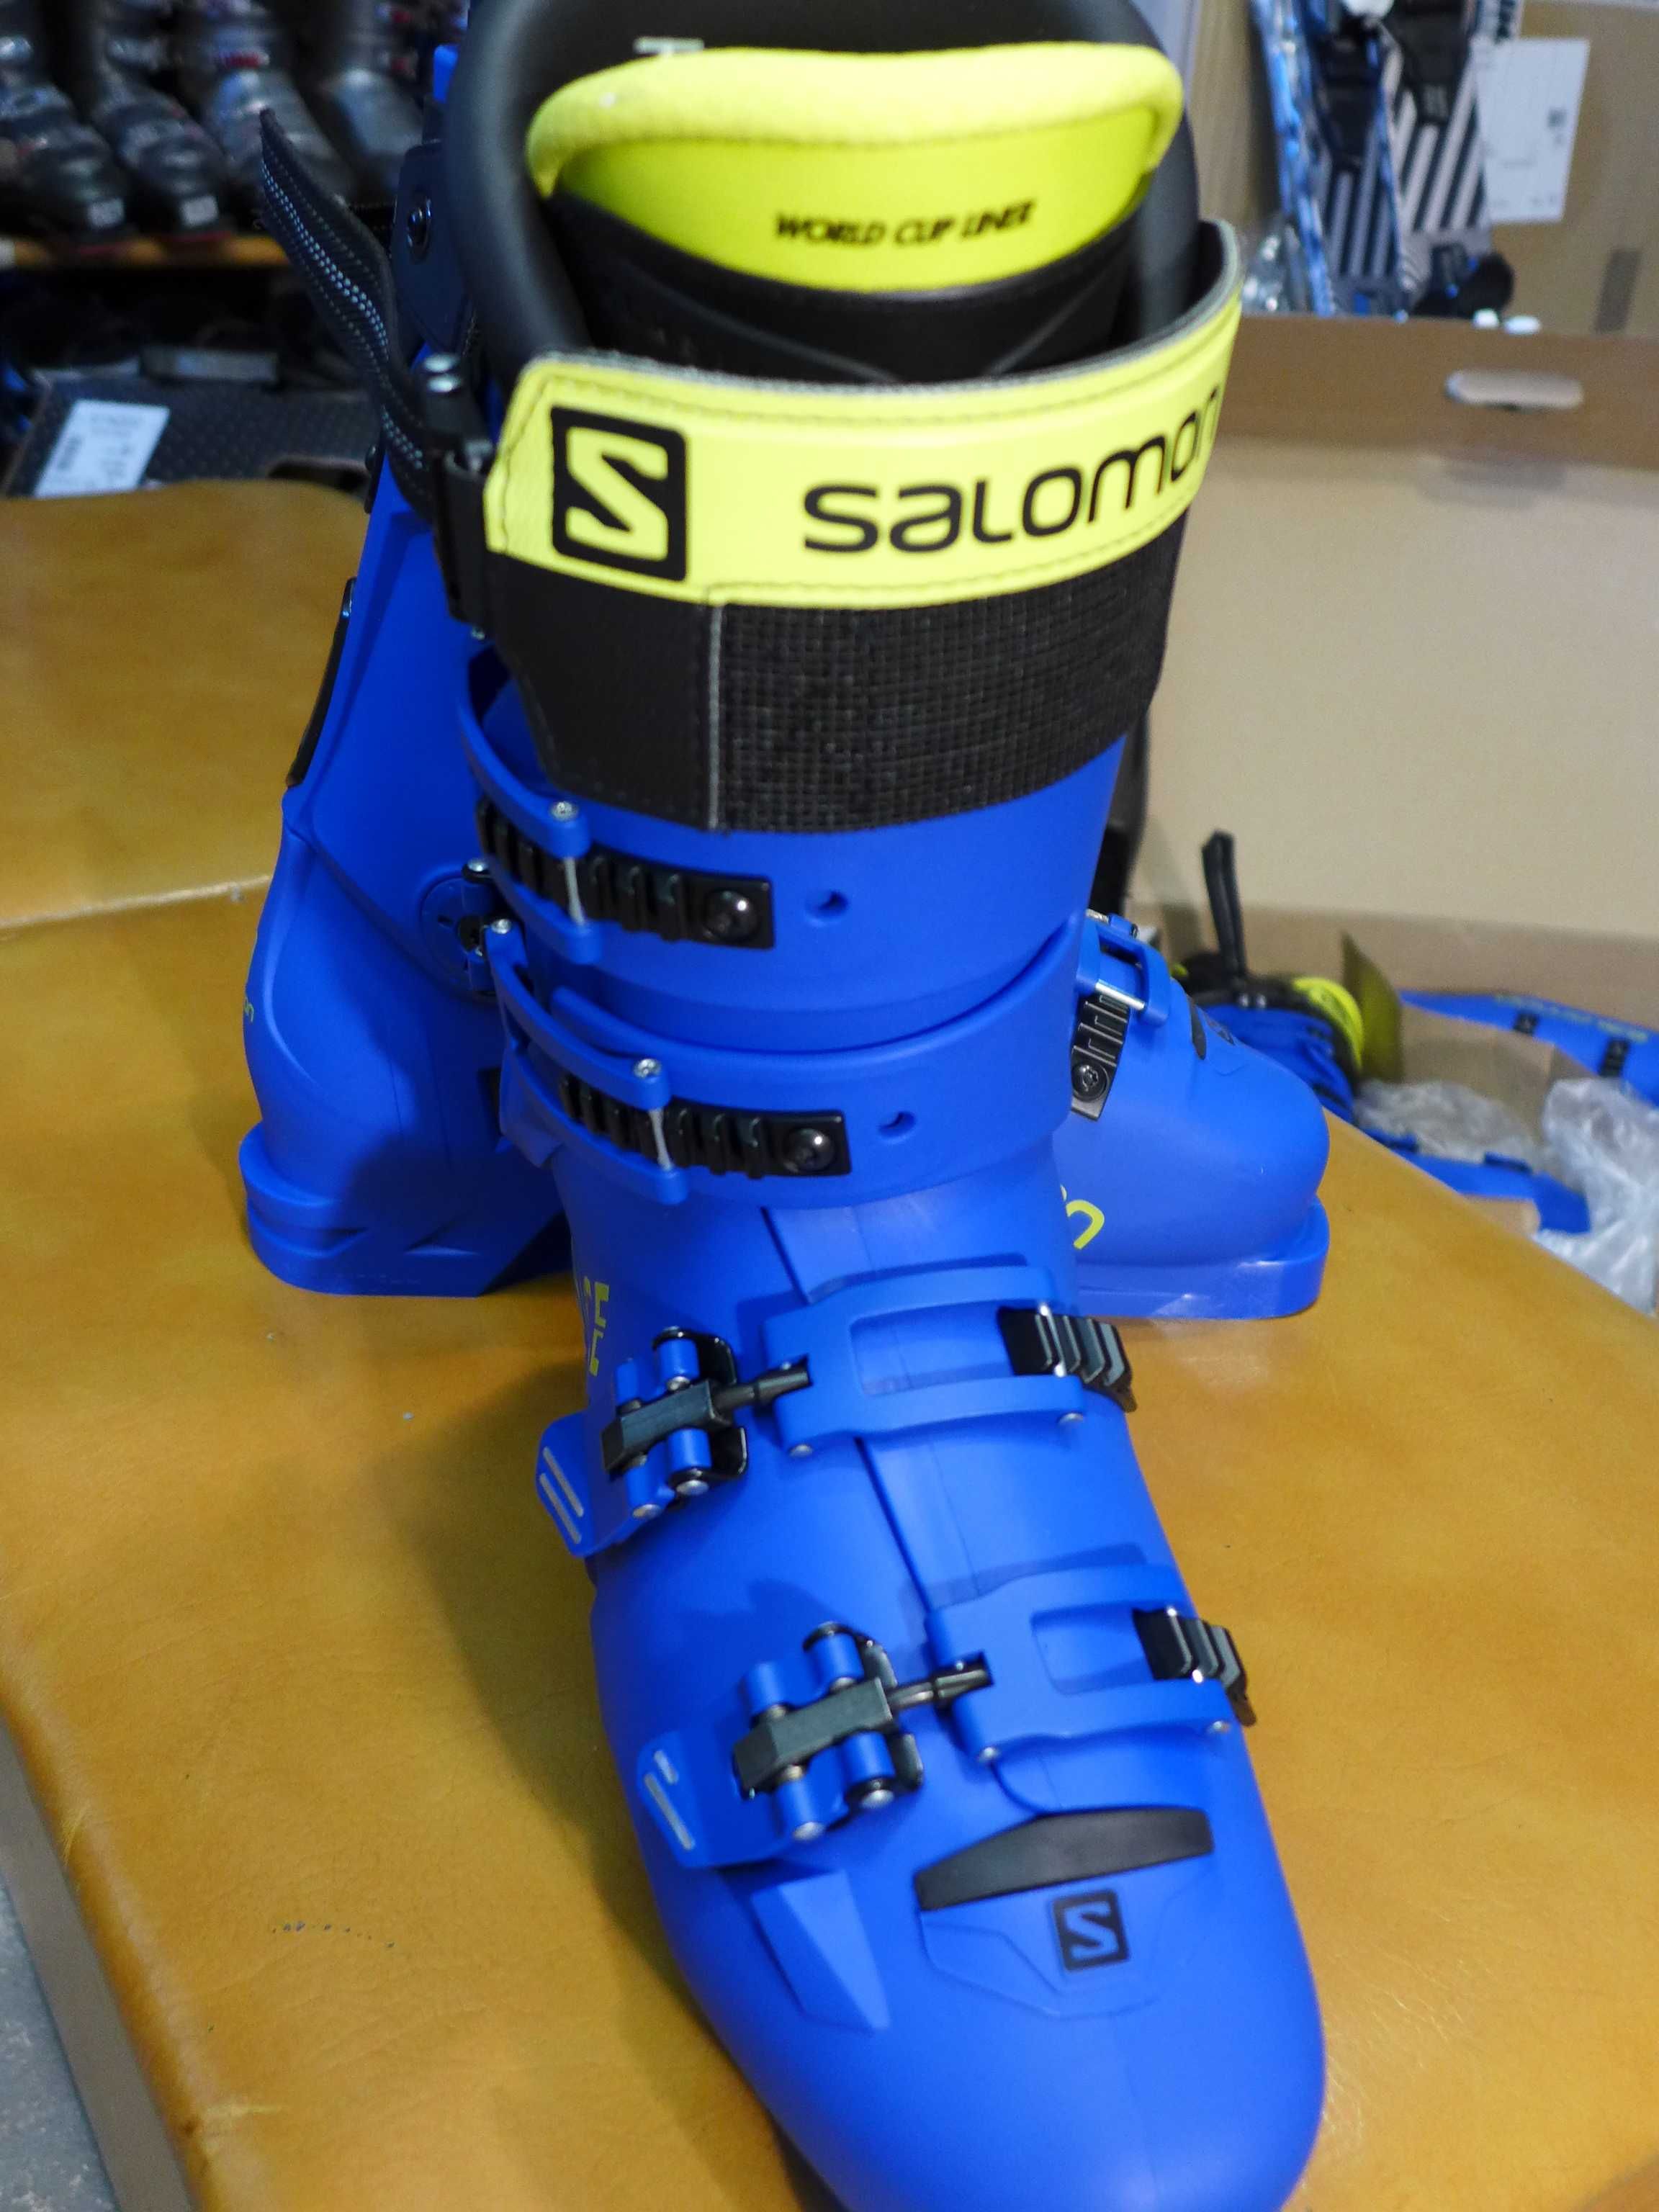 Buty narciarskie SALOMON Race 130 r. 27,5 cm